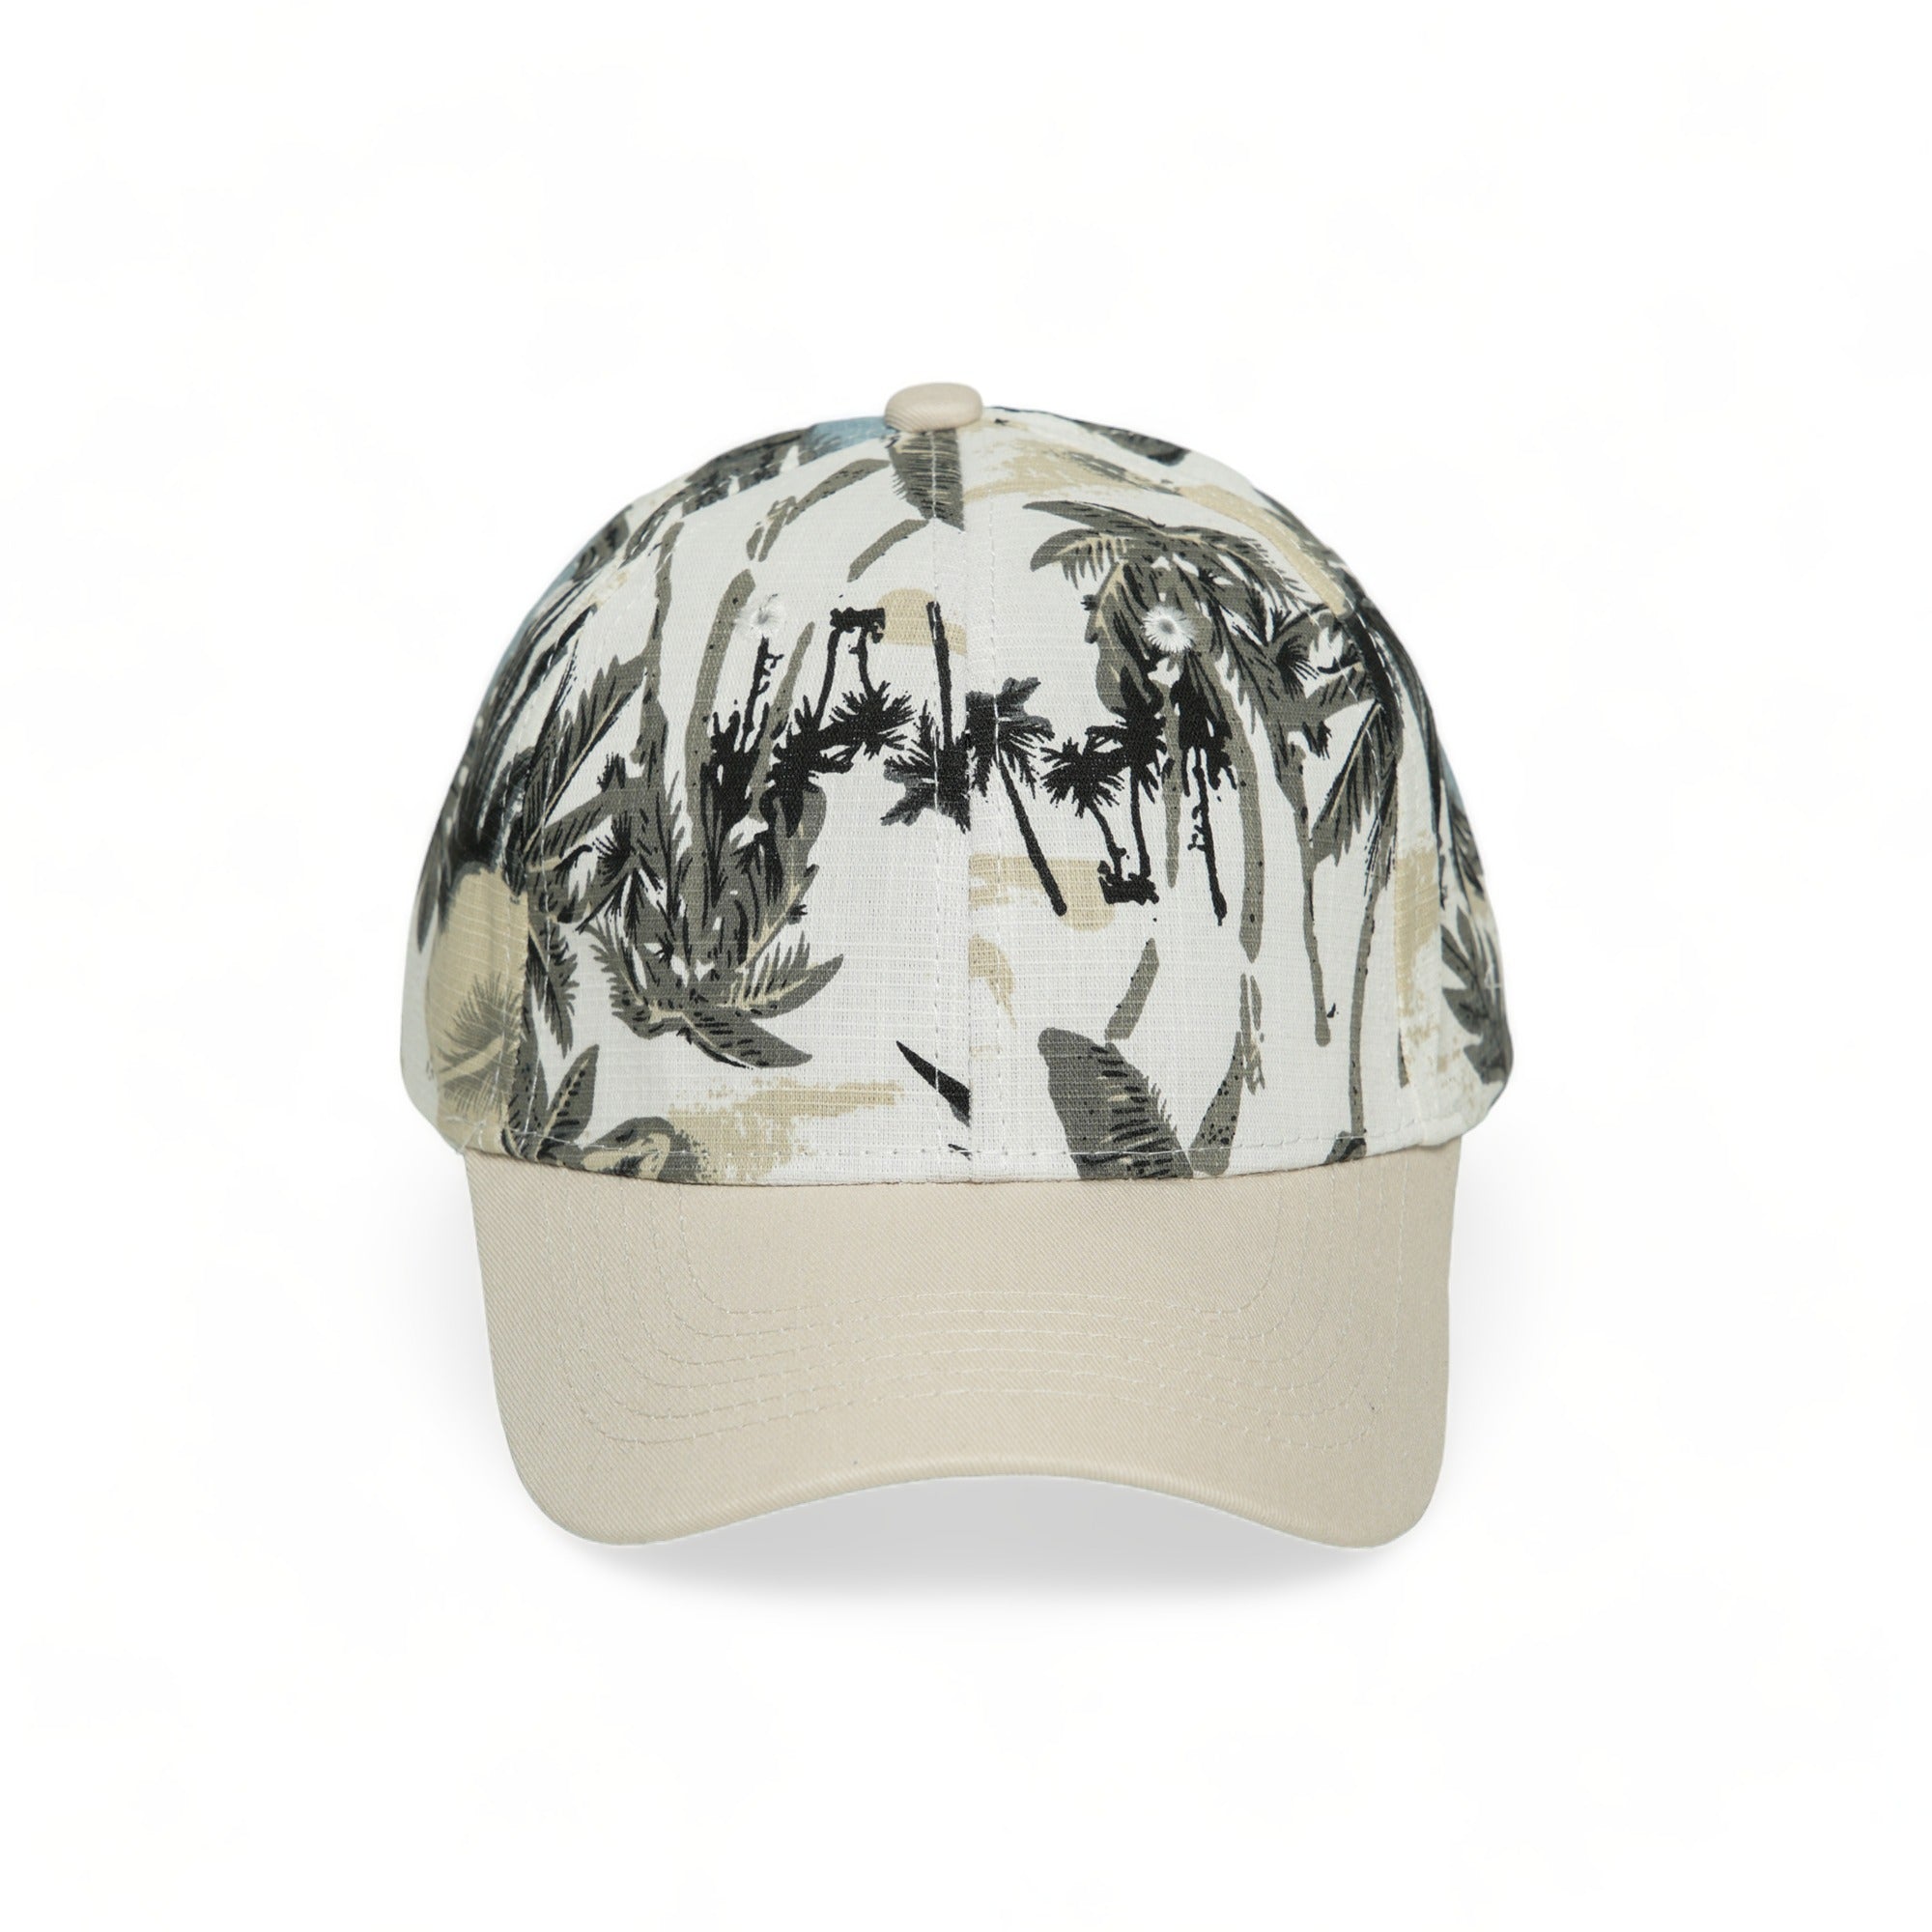 Chokore Tropical Style Leaf Print Baseball Cap (Beige)